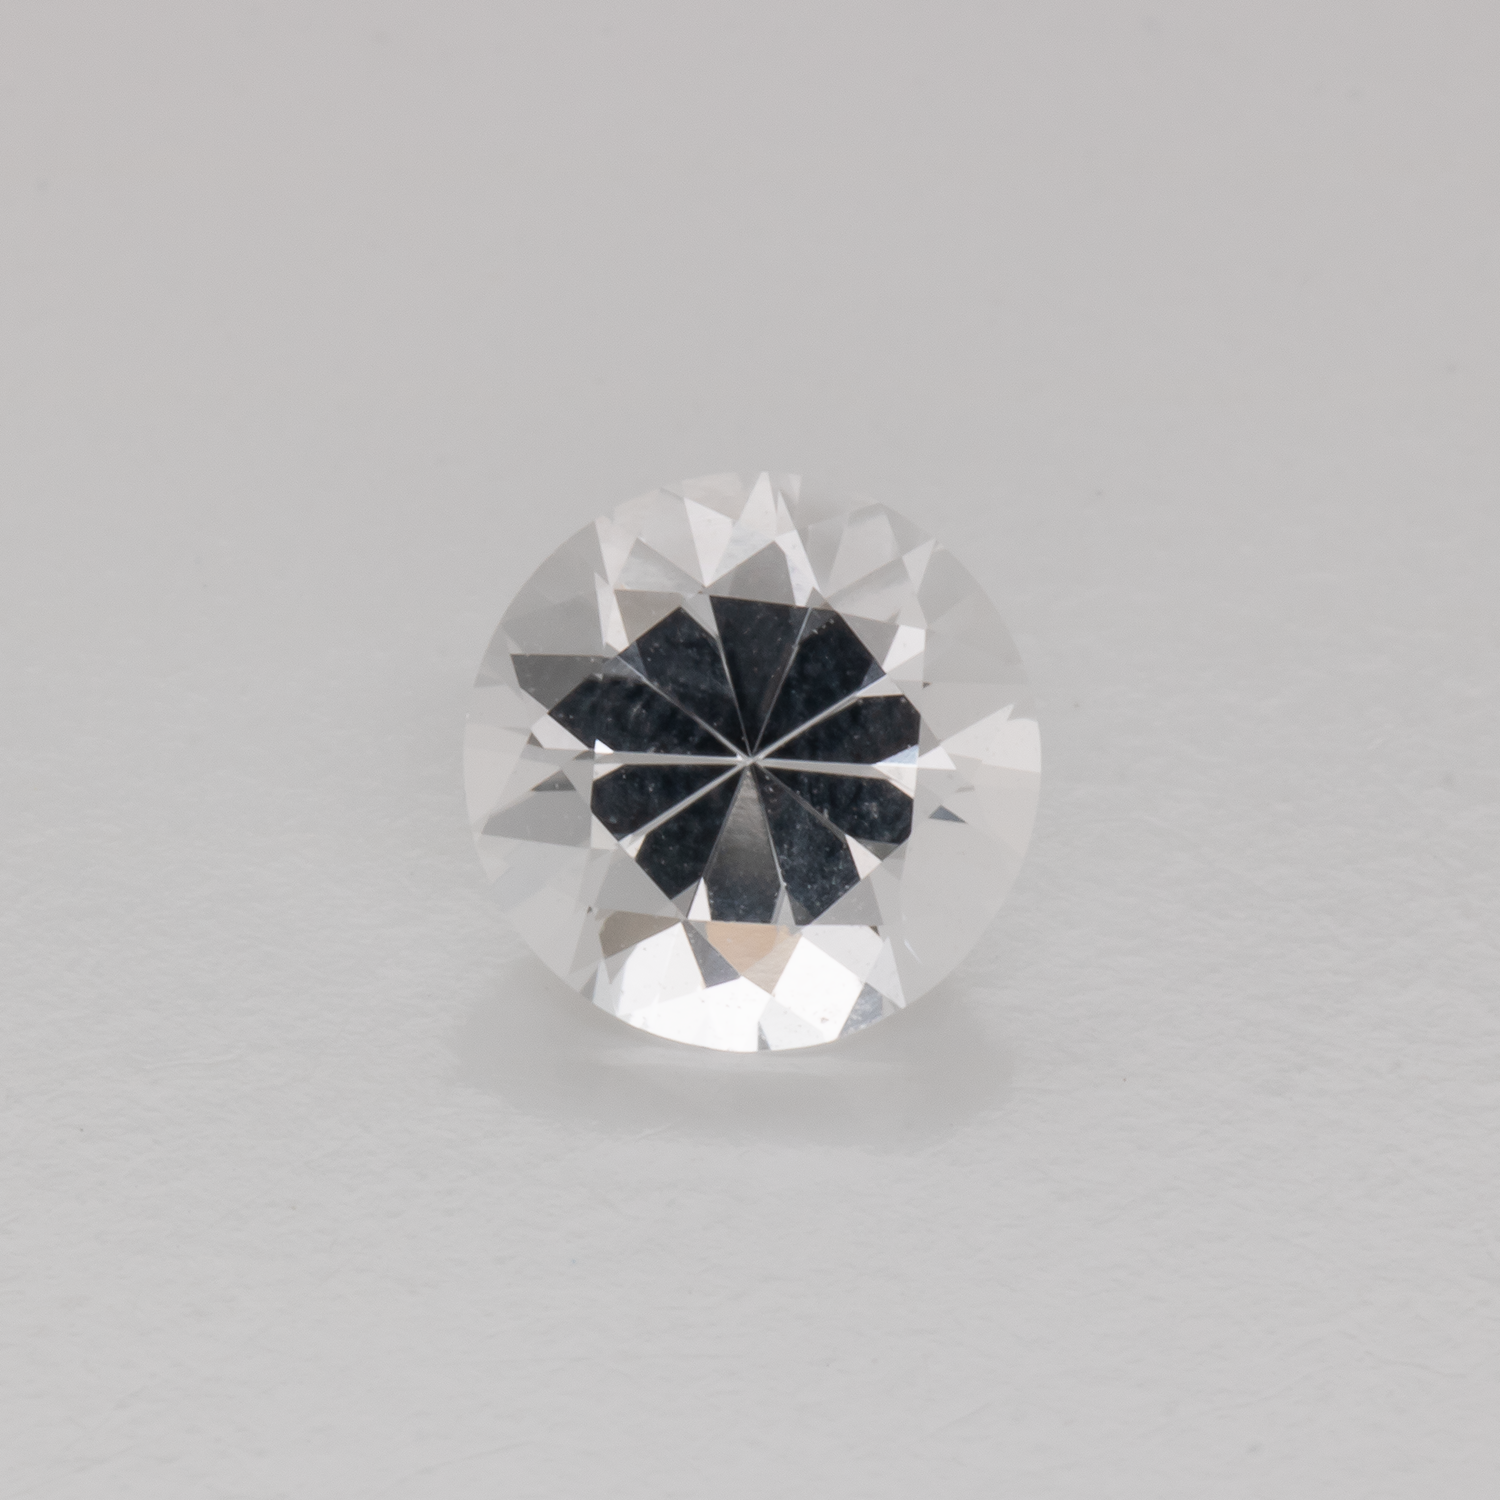 Beryll - weiß, rund, 5.6x5.6 mm, 0.57 - 0.60 cts, Nr. BY90094